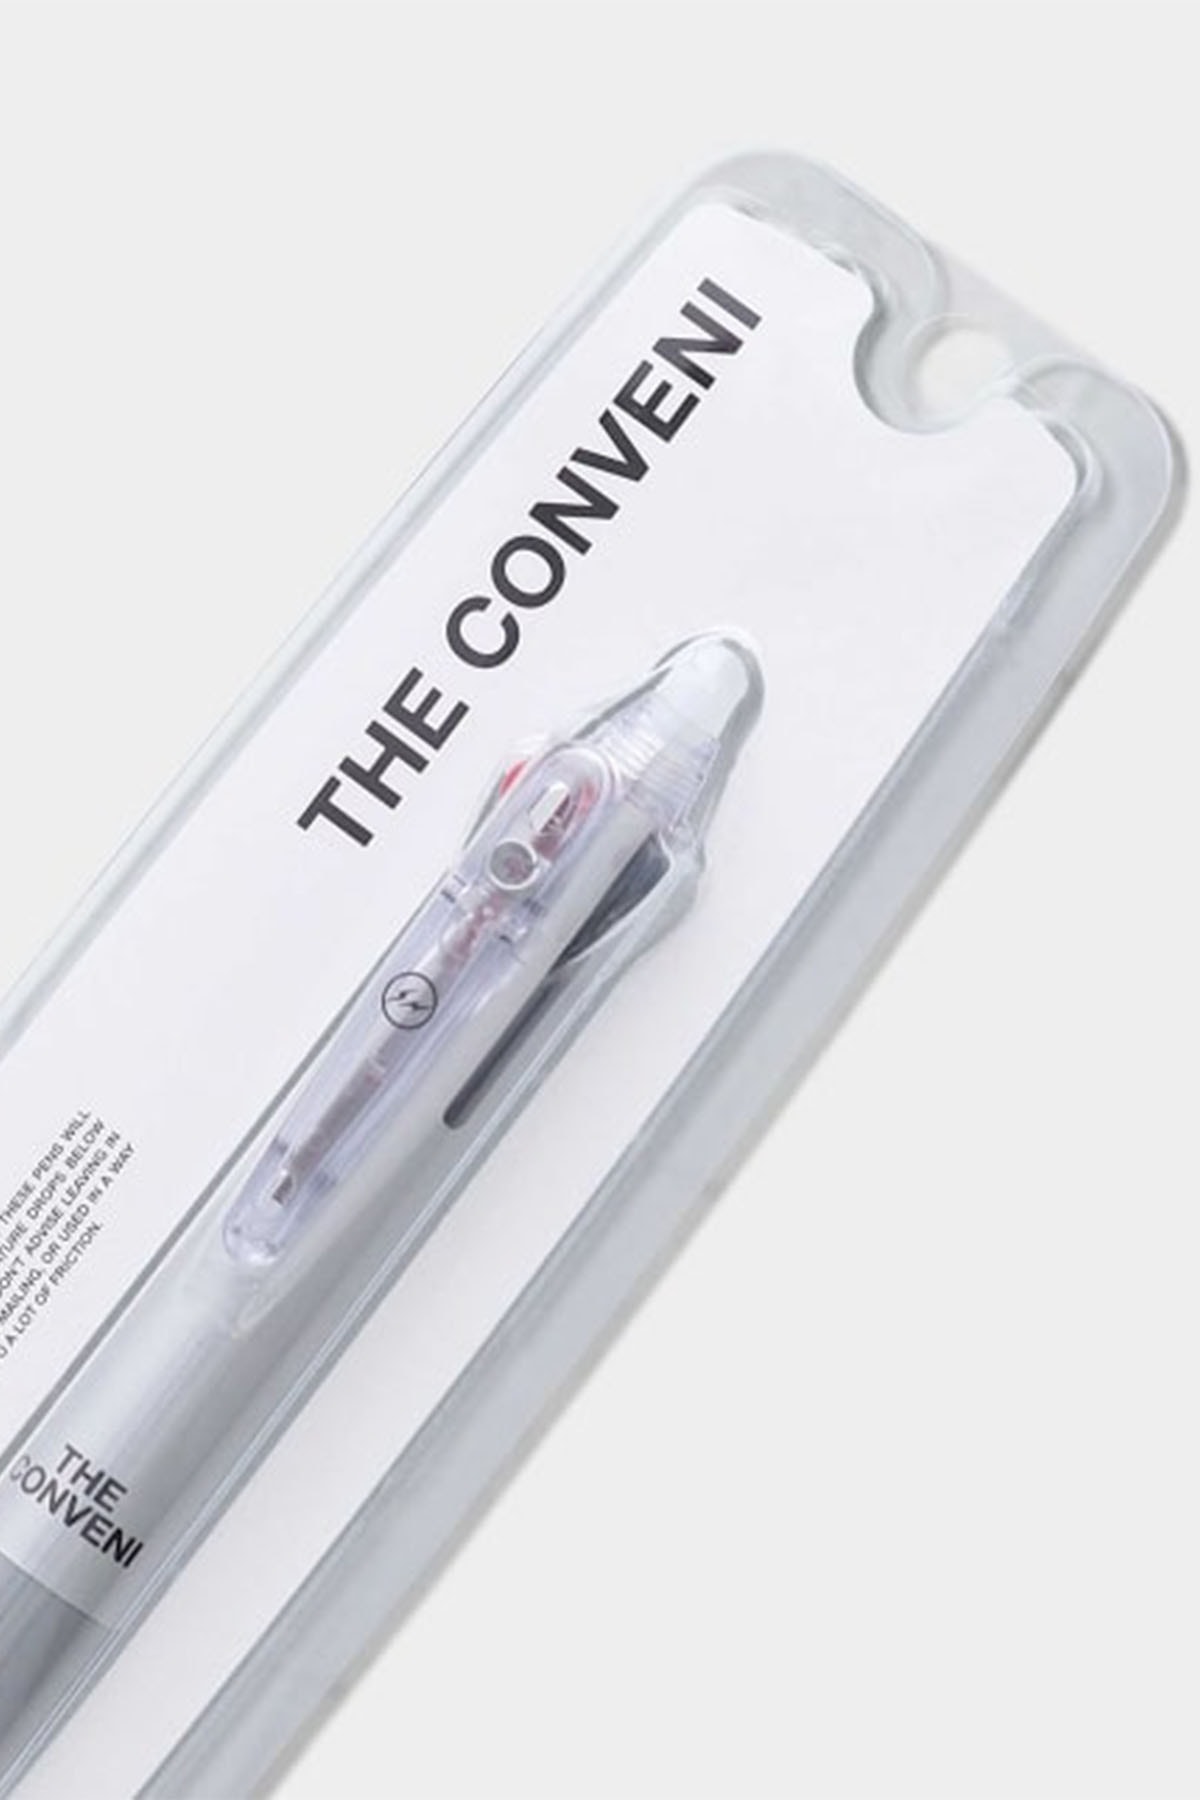 ザ・コンビニ おうち時間に彩りを添える THE CONVENI のライフスタイルアイテムを一挙紹介